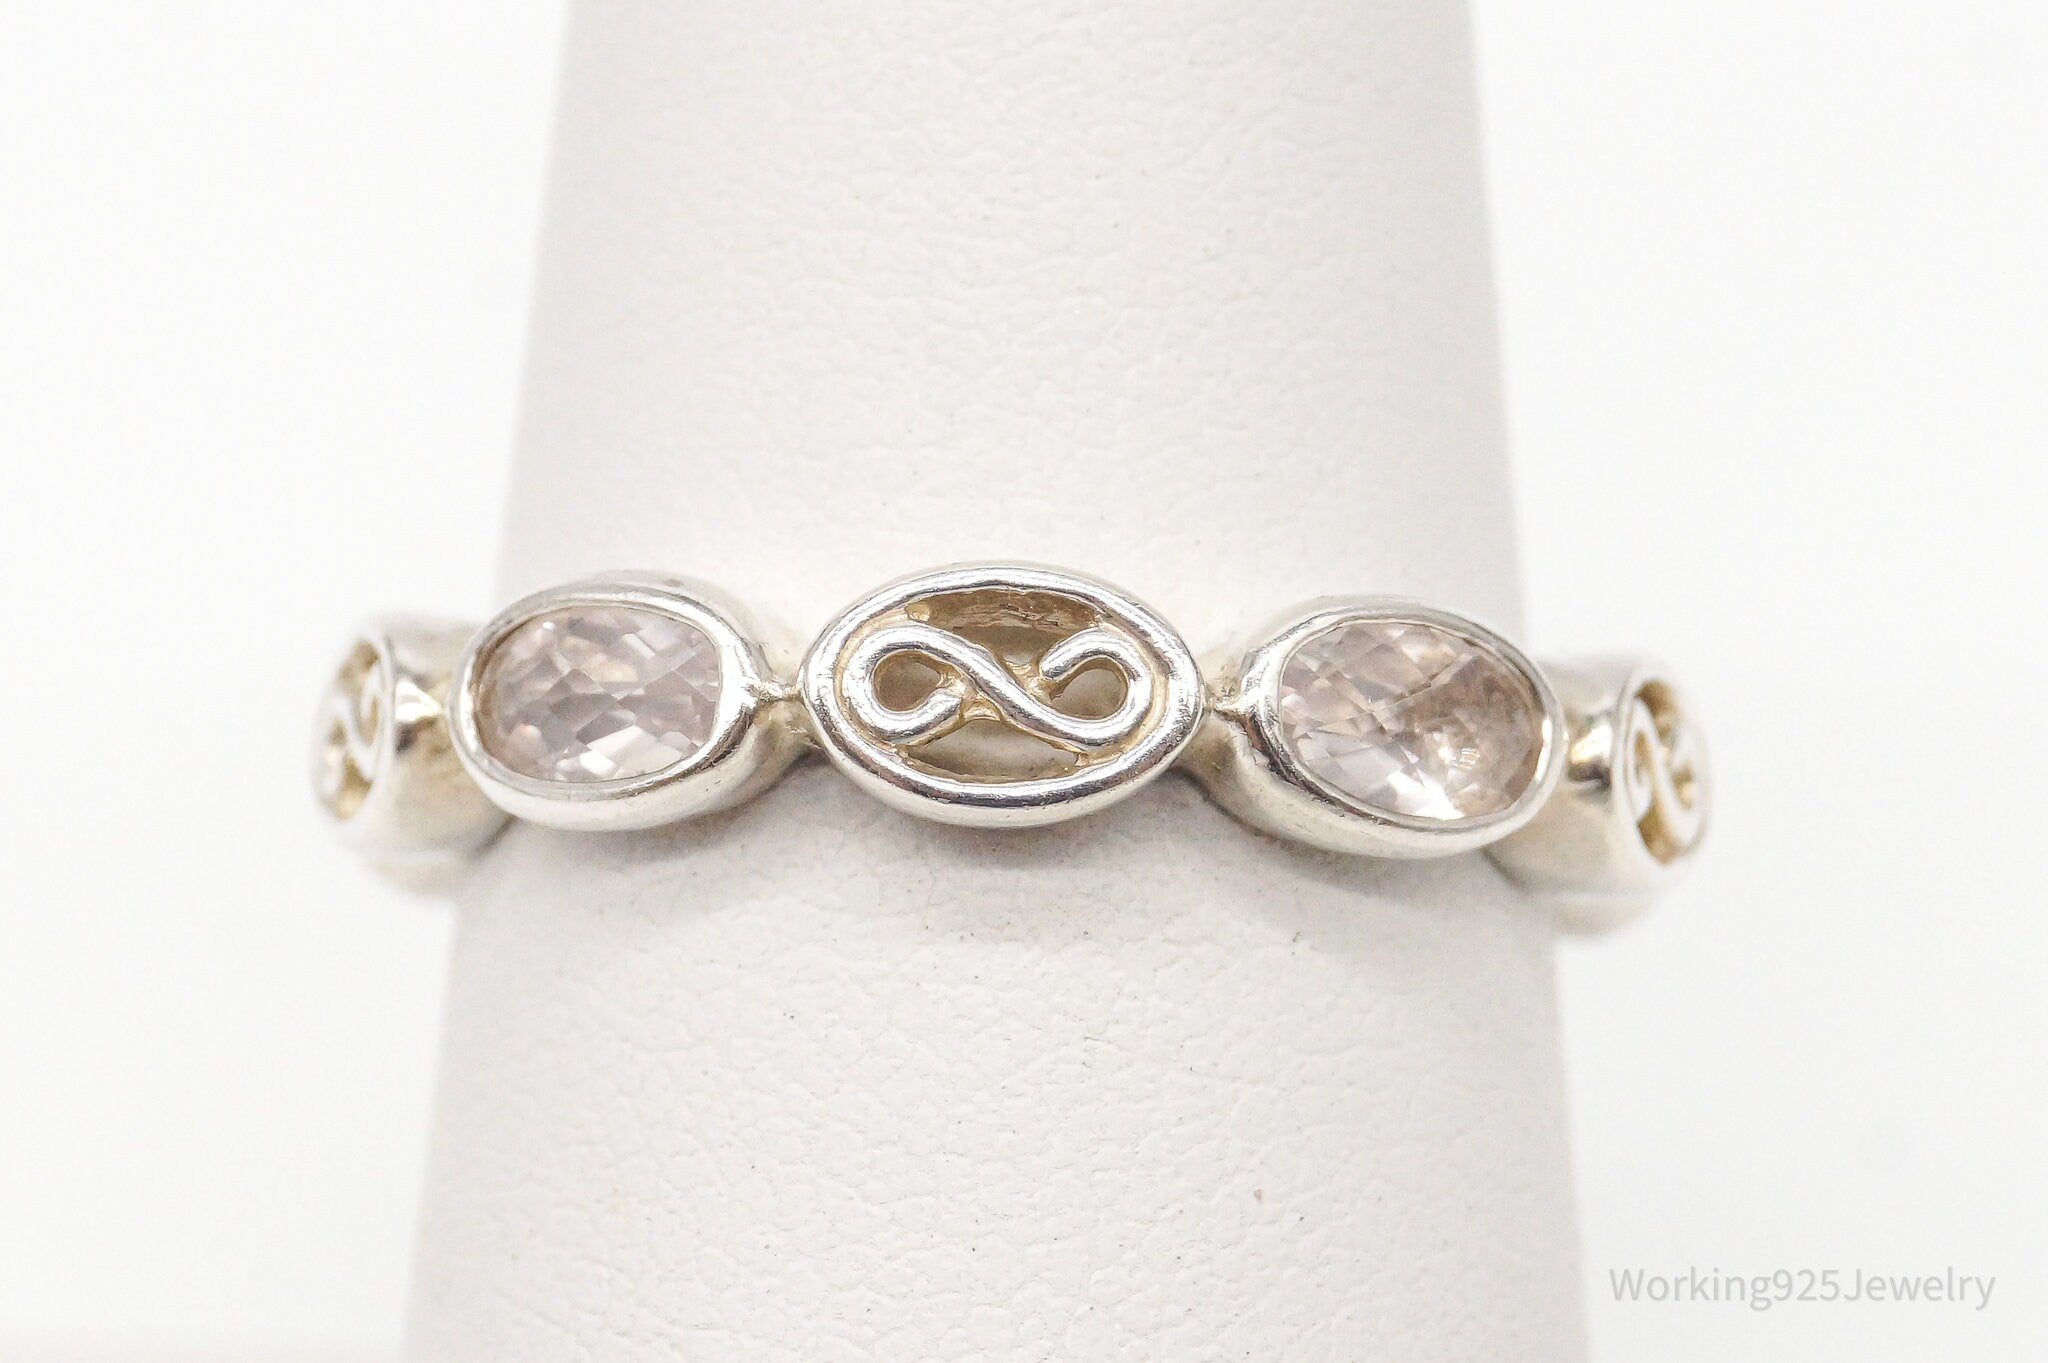 Vintage Rose Quartz Sterling Silver Ring - Size 7